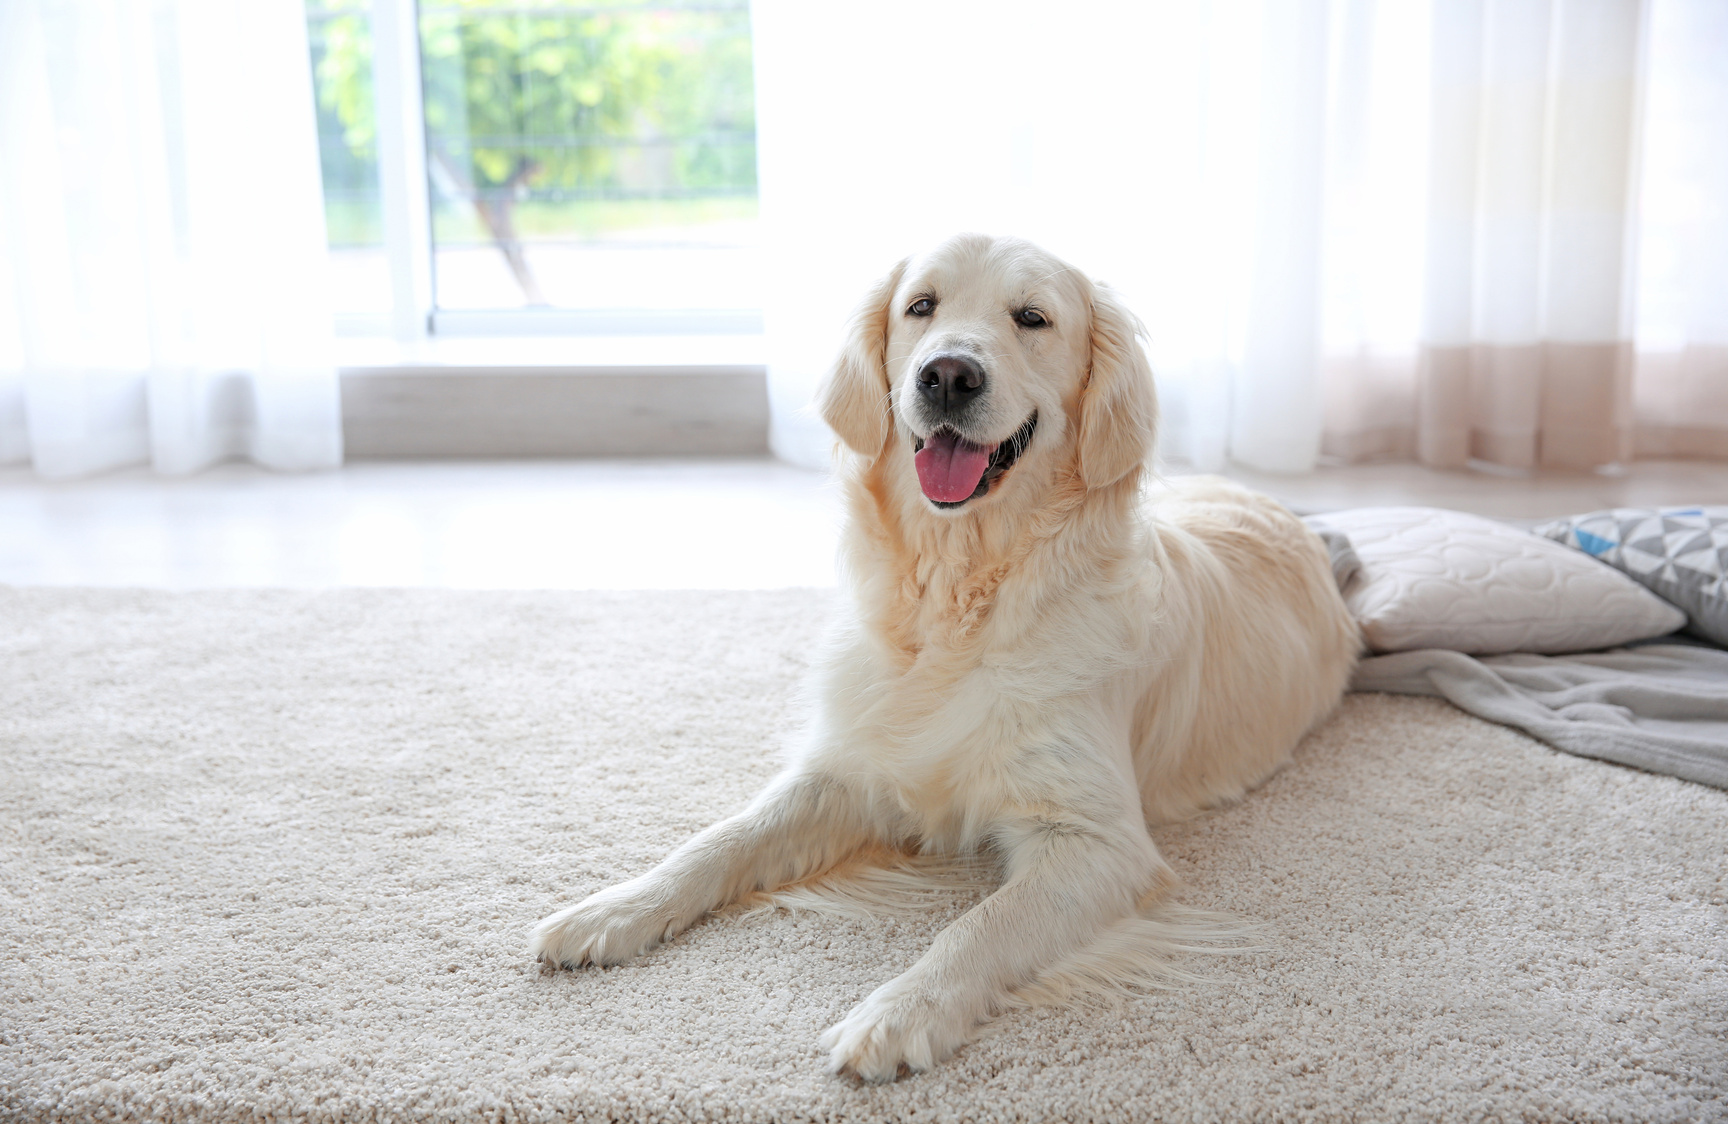 Dog Lying on Carpet Indoors 